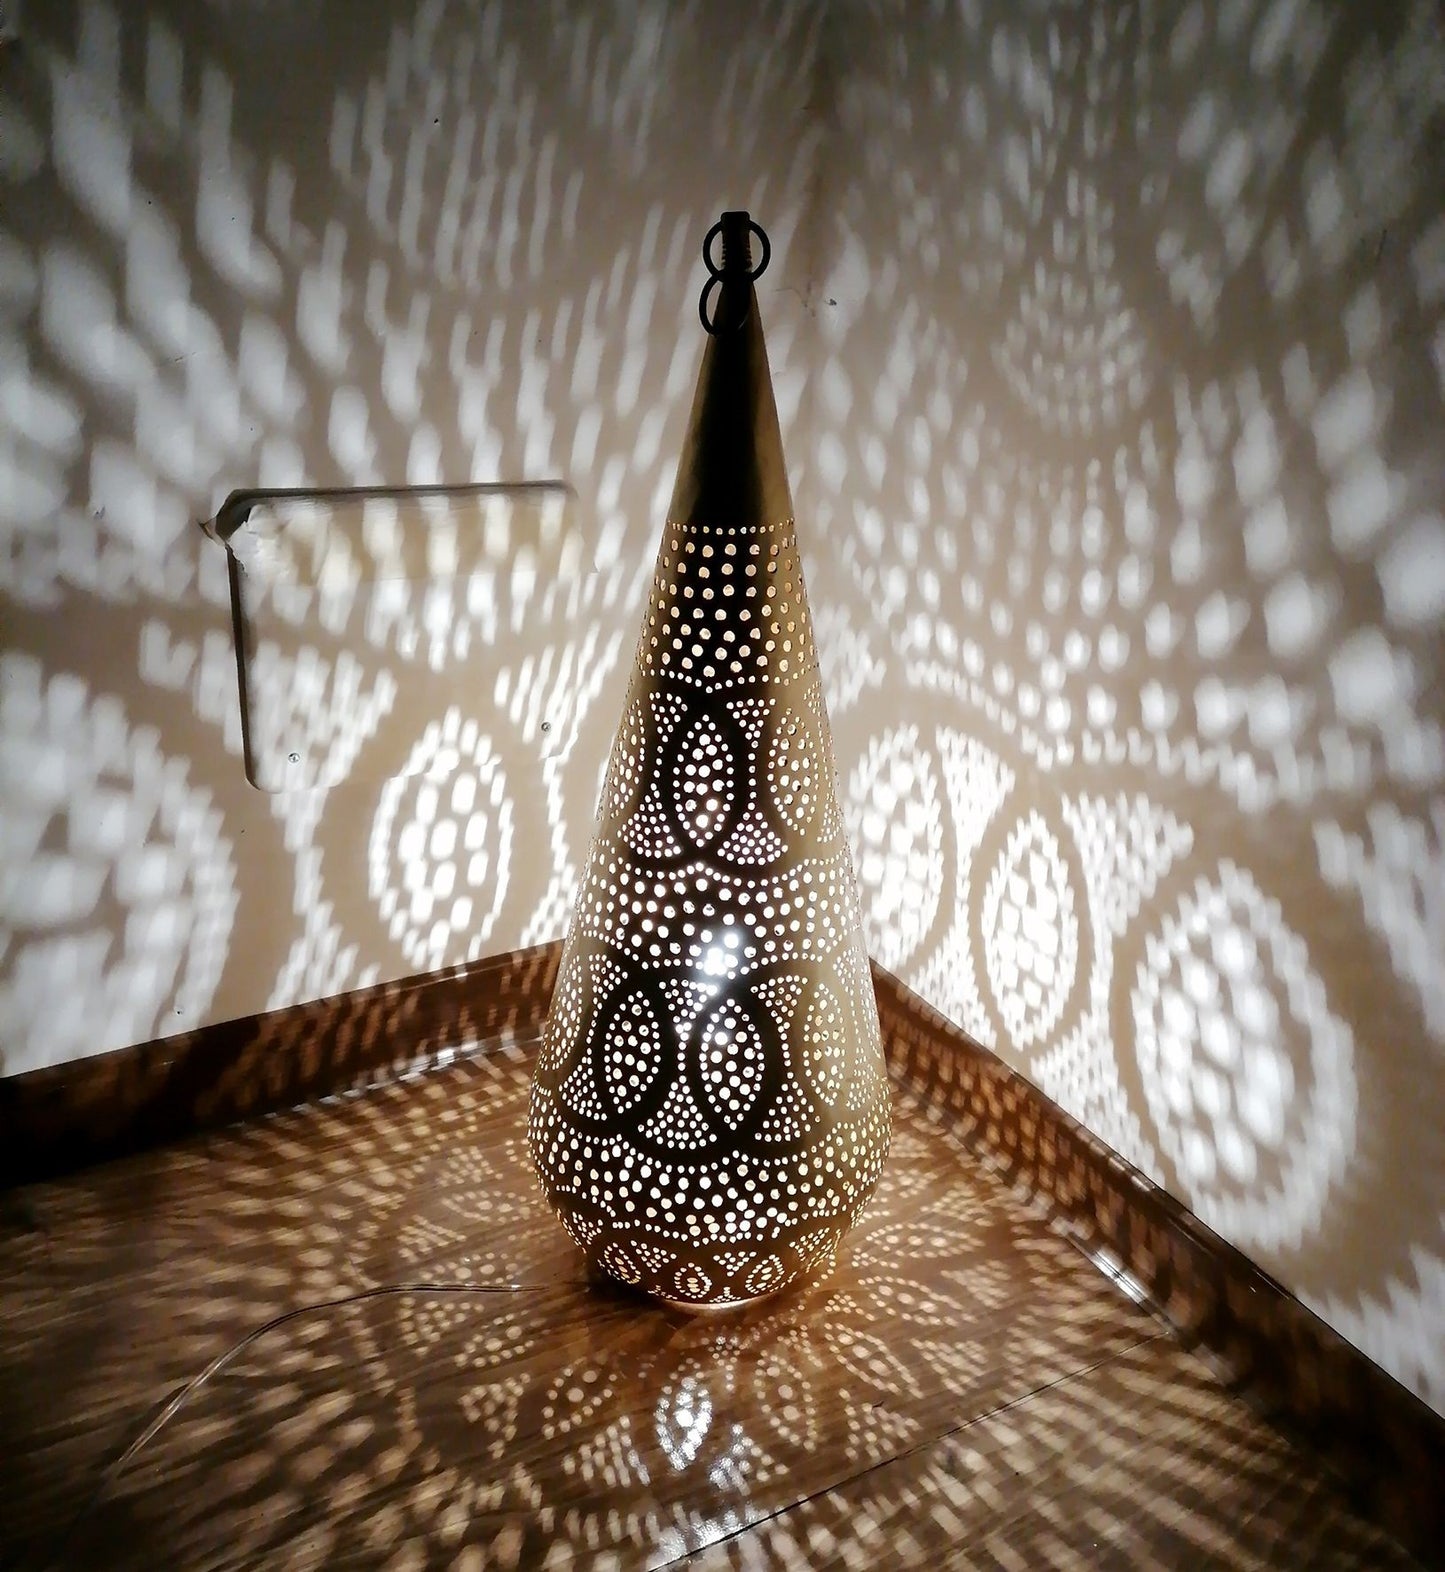 Etnisch meubilair Marokkaanse bronzen kroonluchter Oosterse lantaarnlamp 0203210808